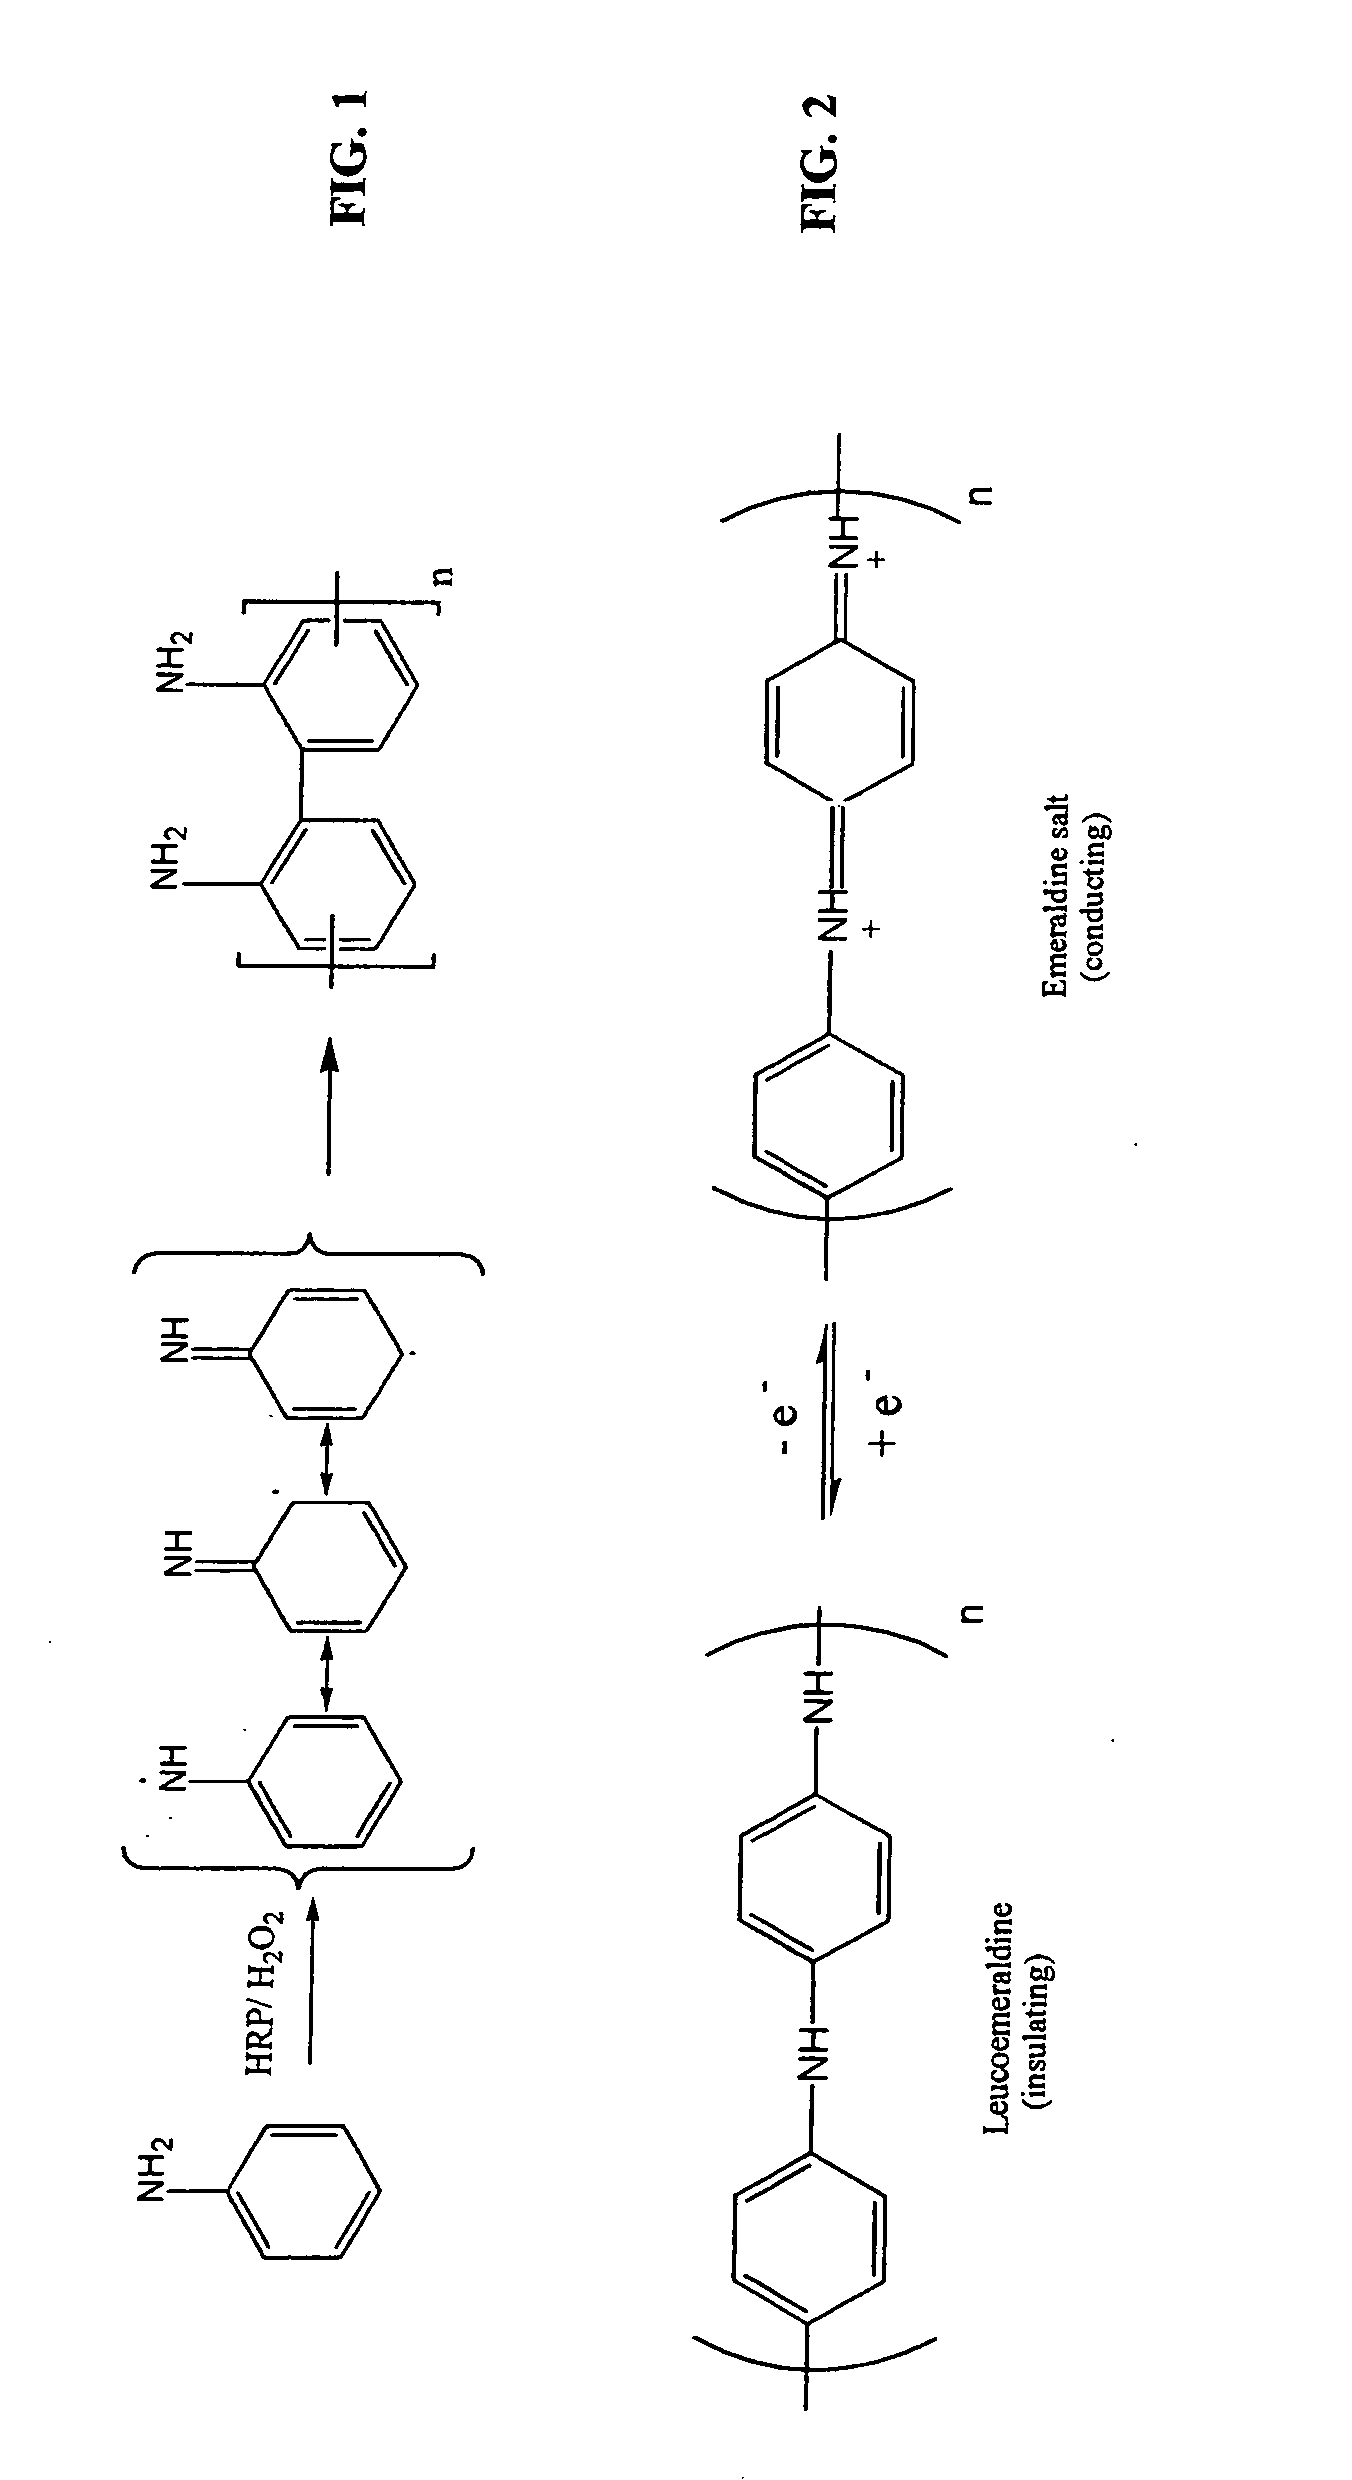 Enzymatic template polymerization